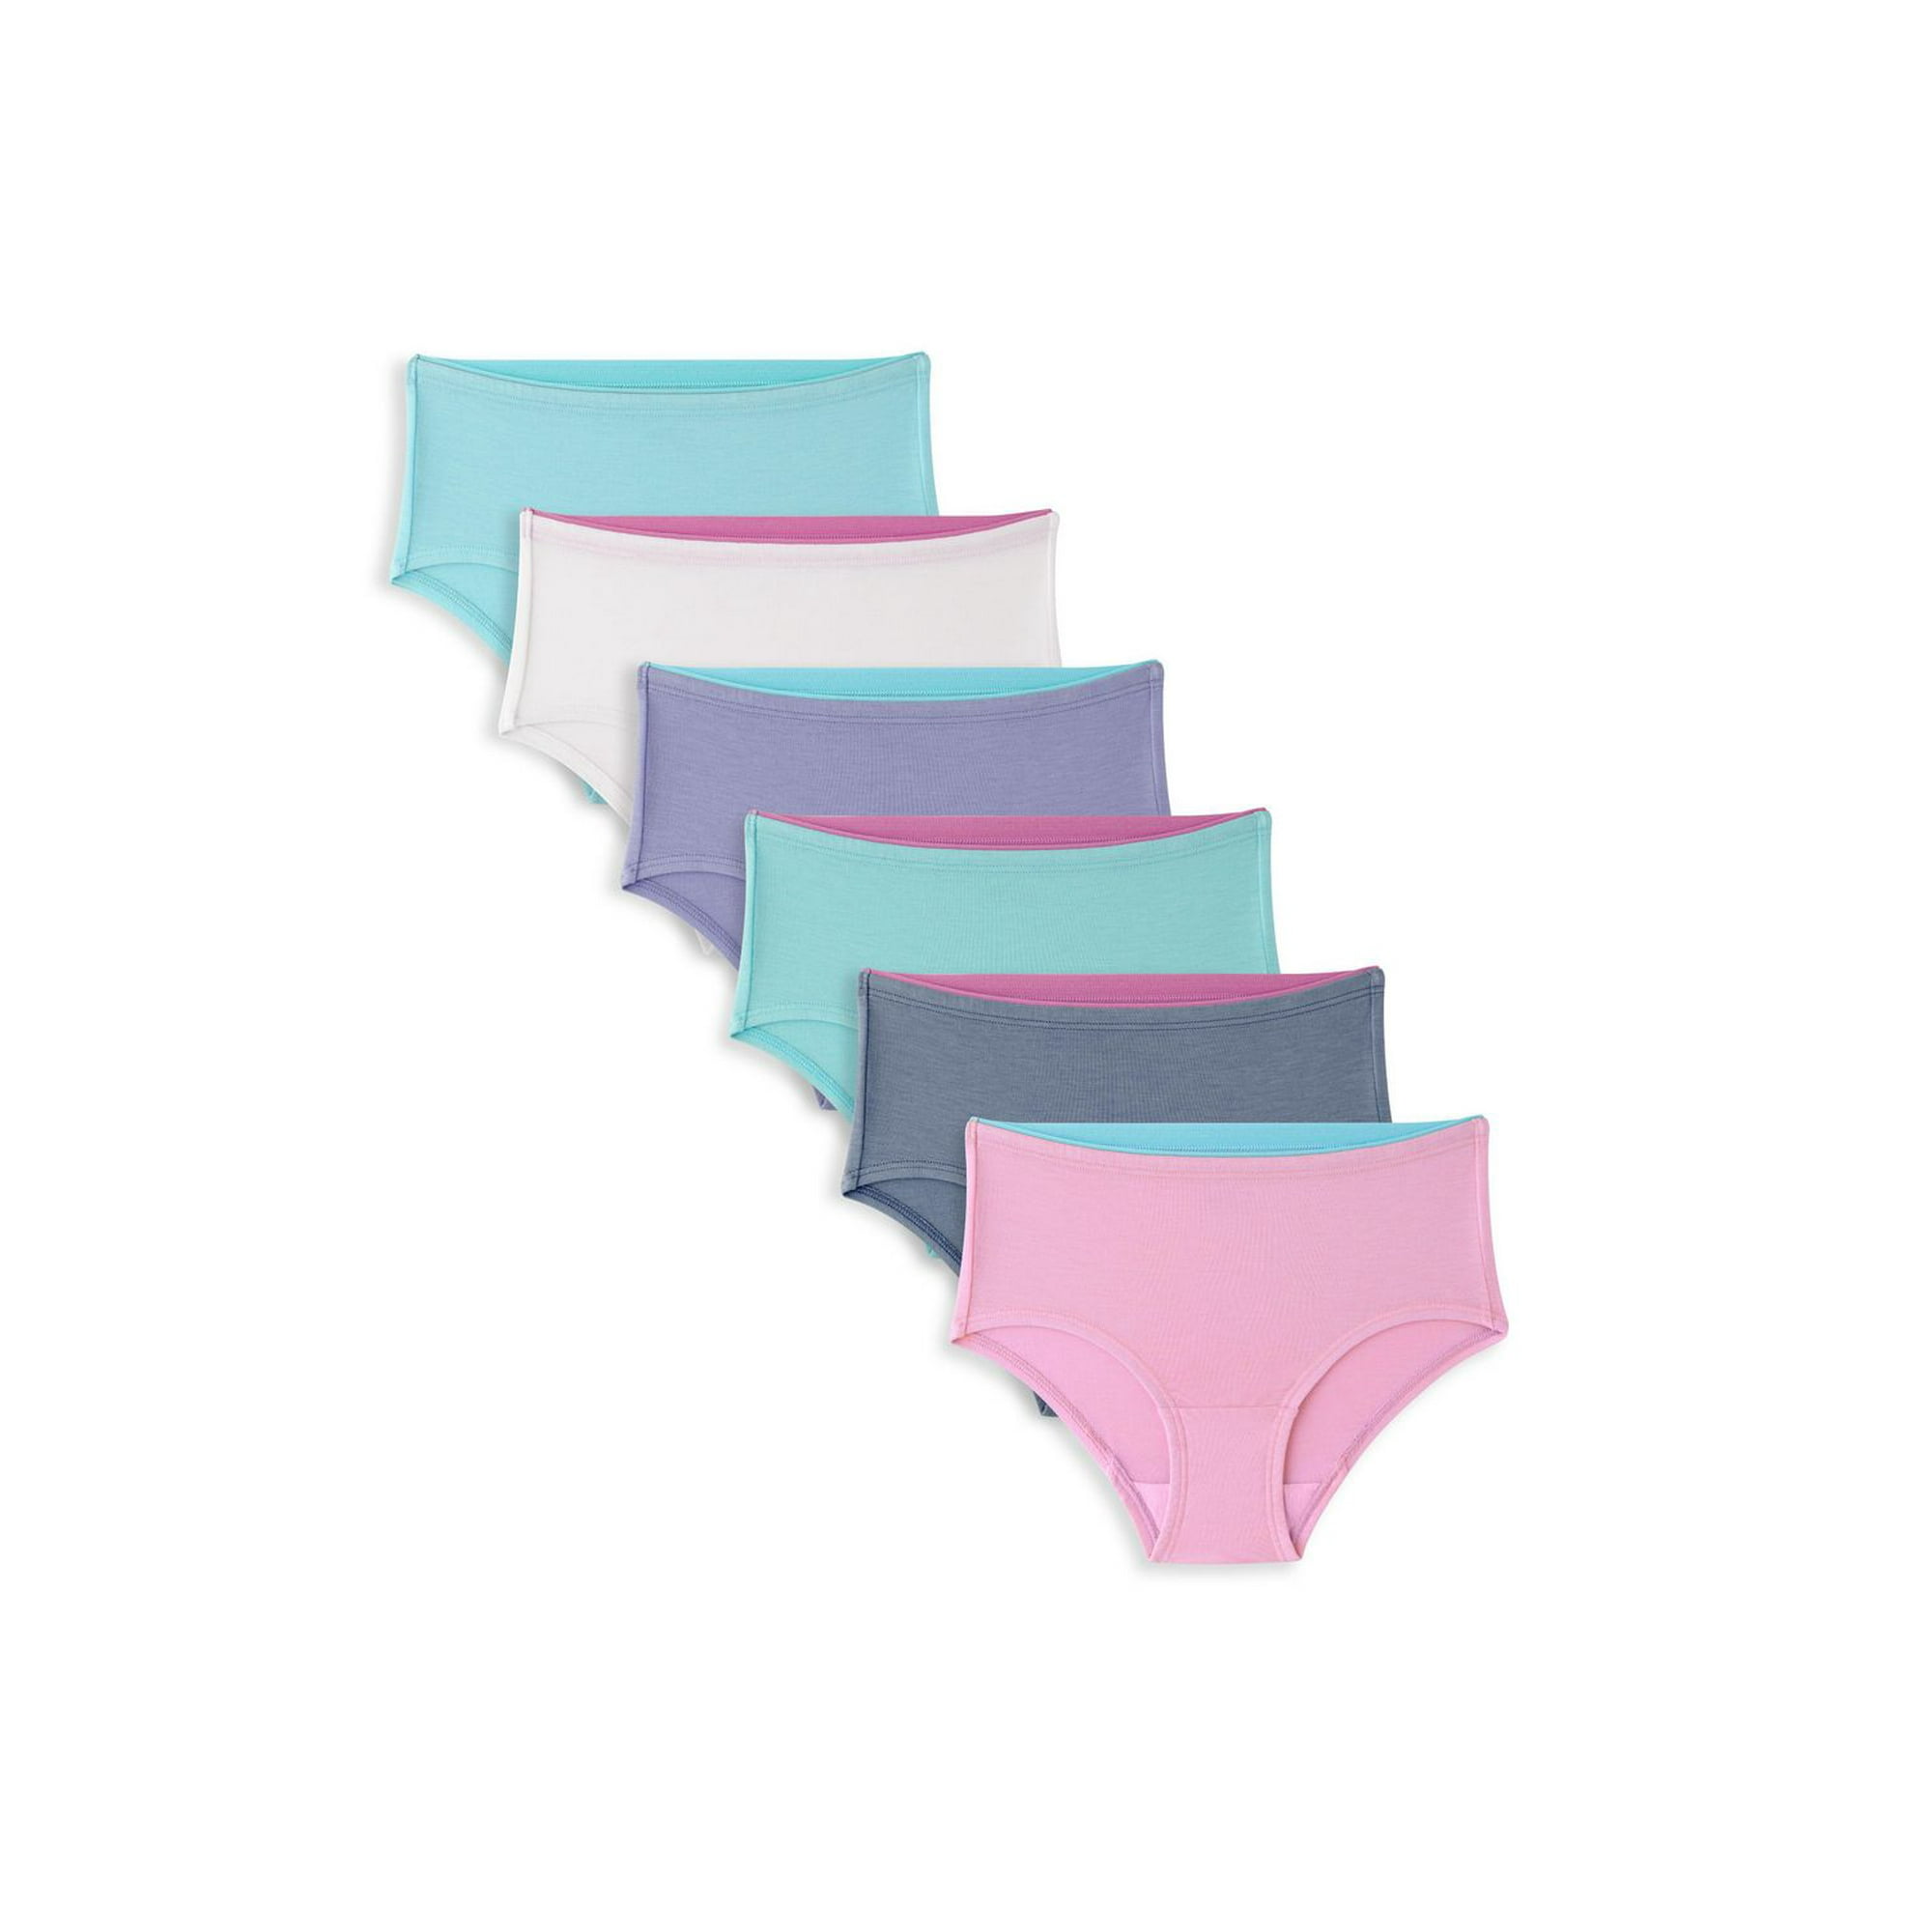 6Pack 2-10T Girls Underwear Cotton Breathable Briefs Comfort Baby